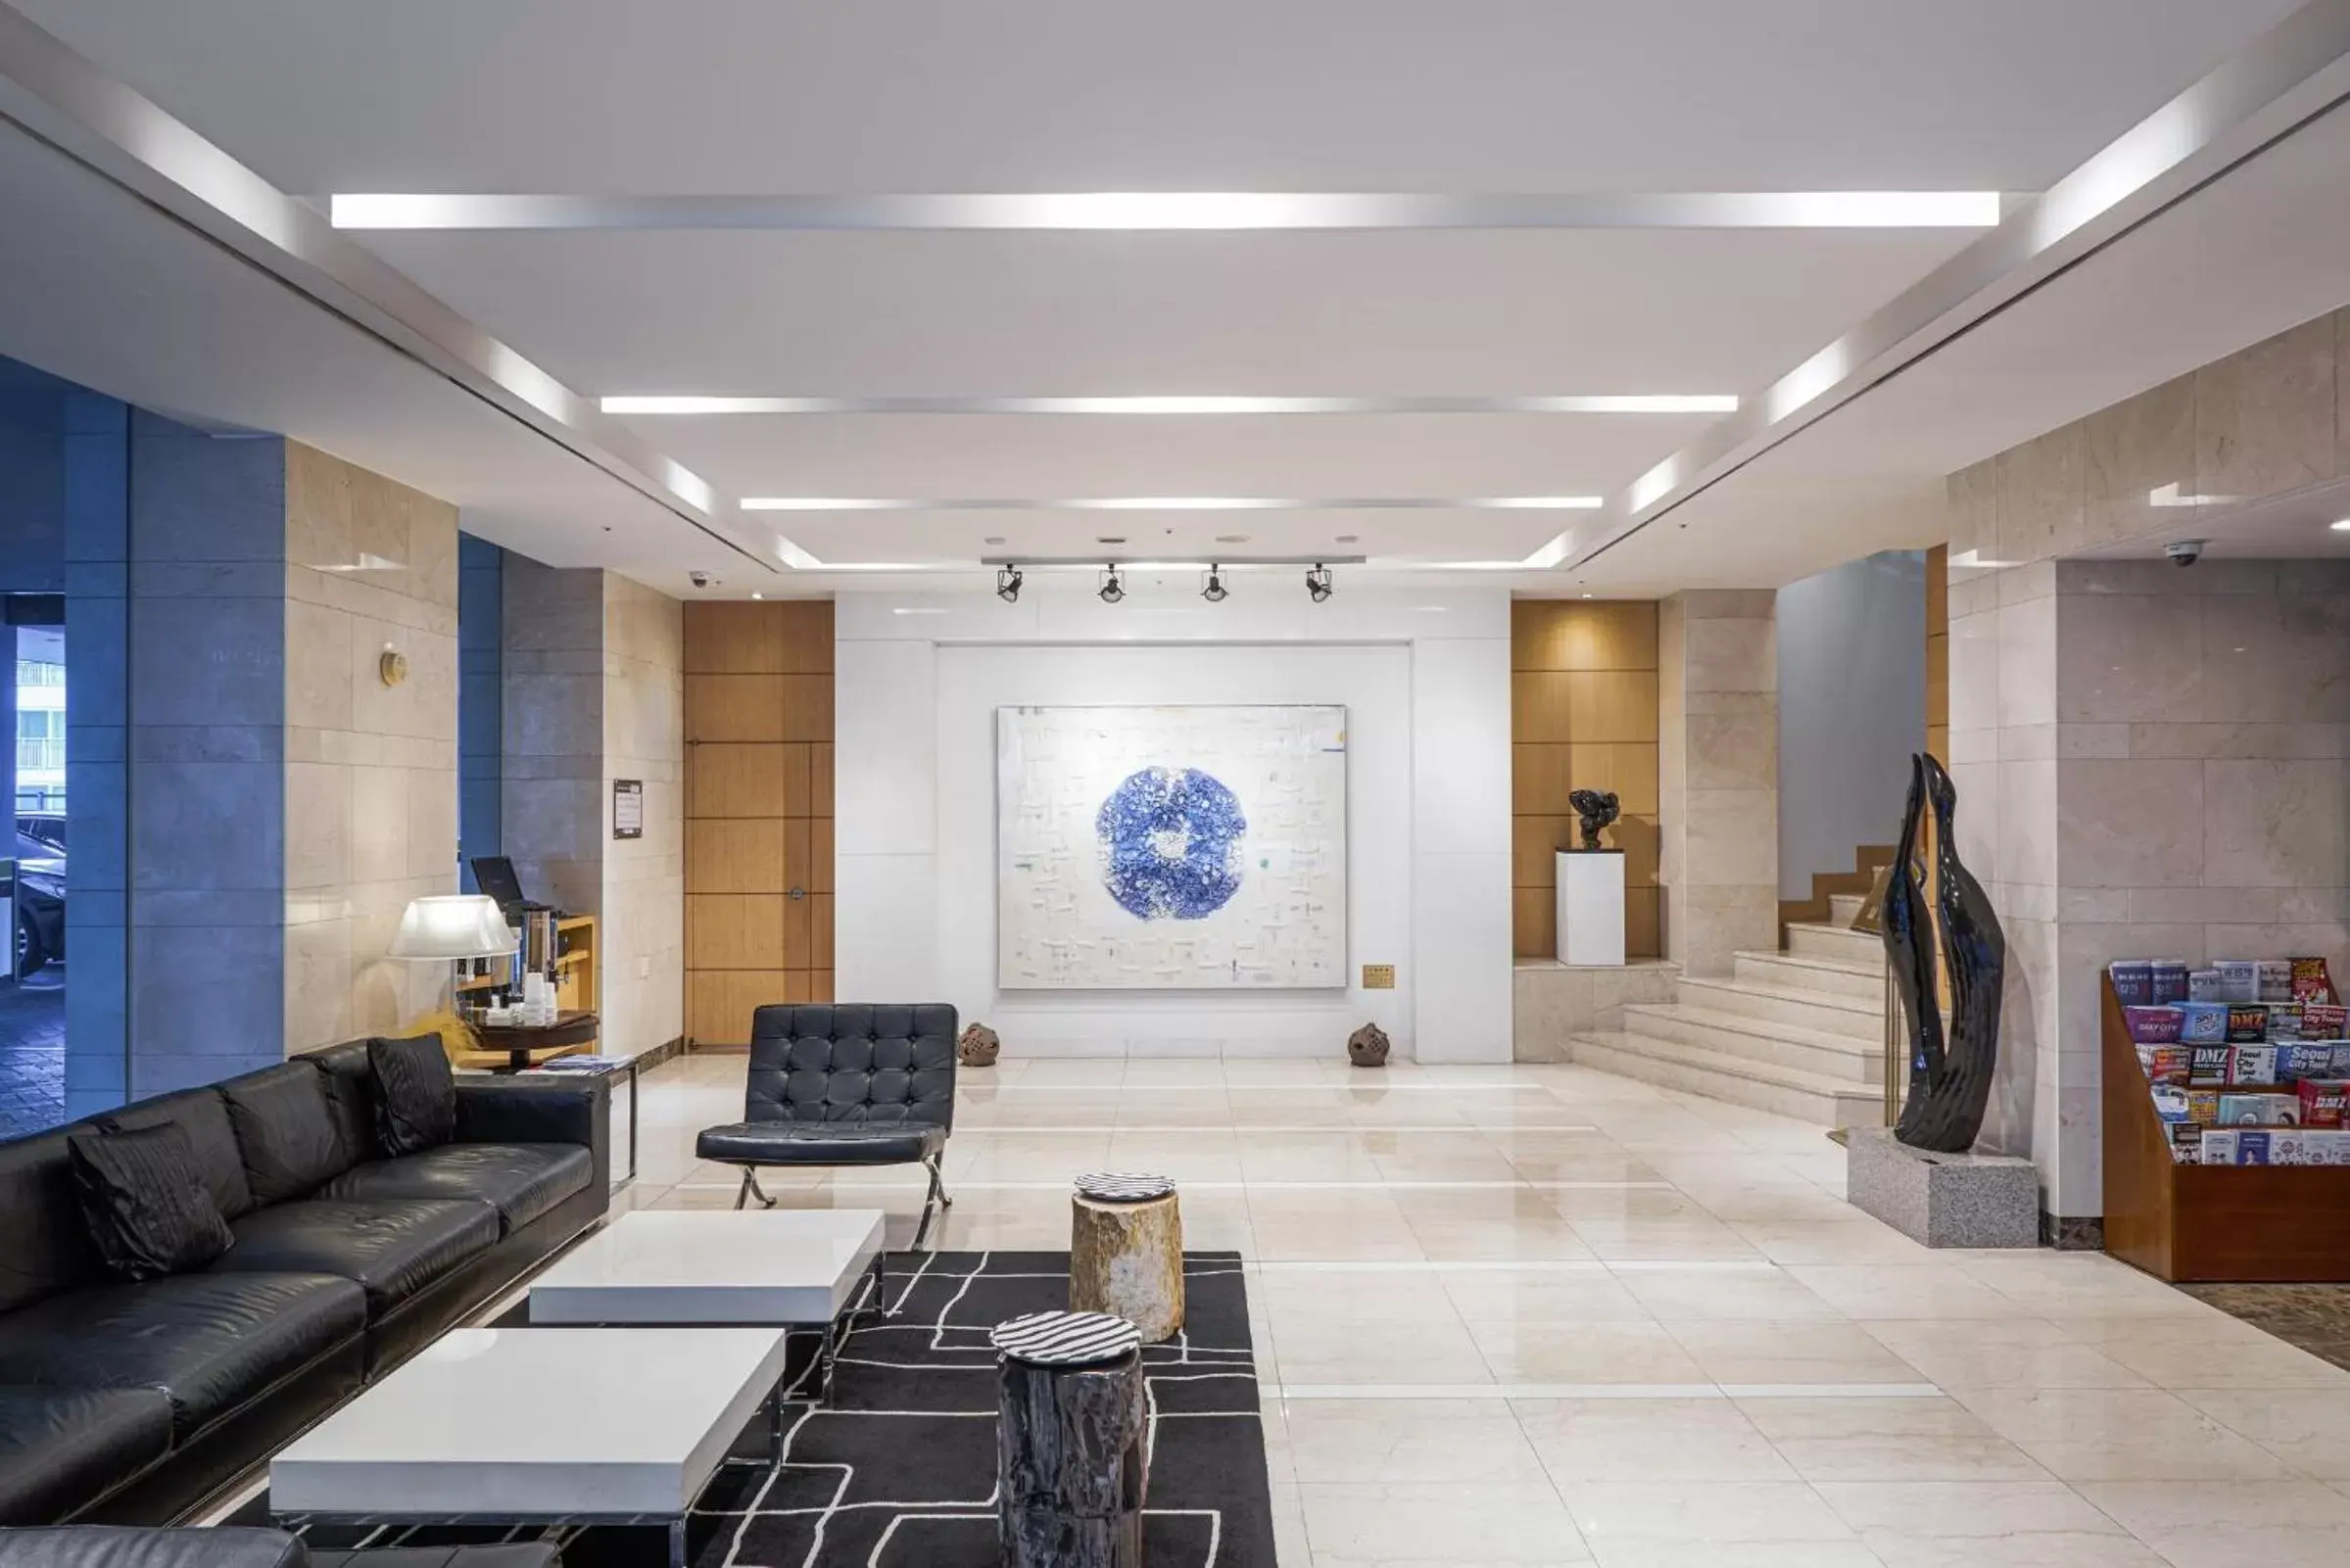 Lobby or reception, Lobby/Reception in Best Western Premier Gangnam Hotel